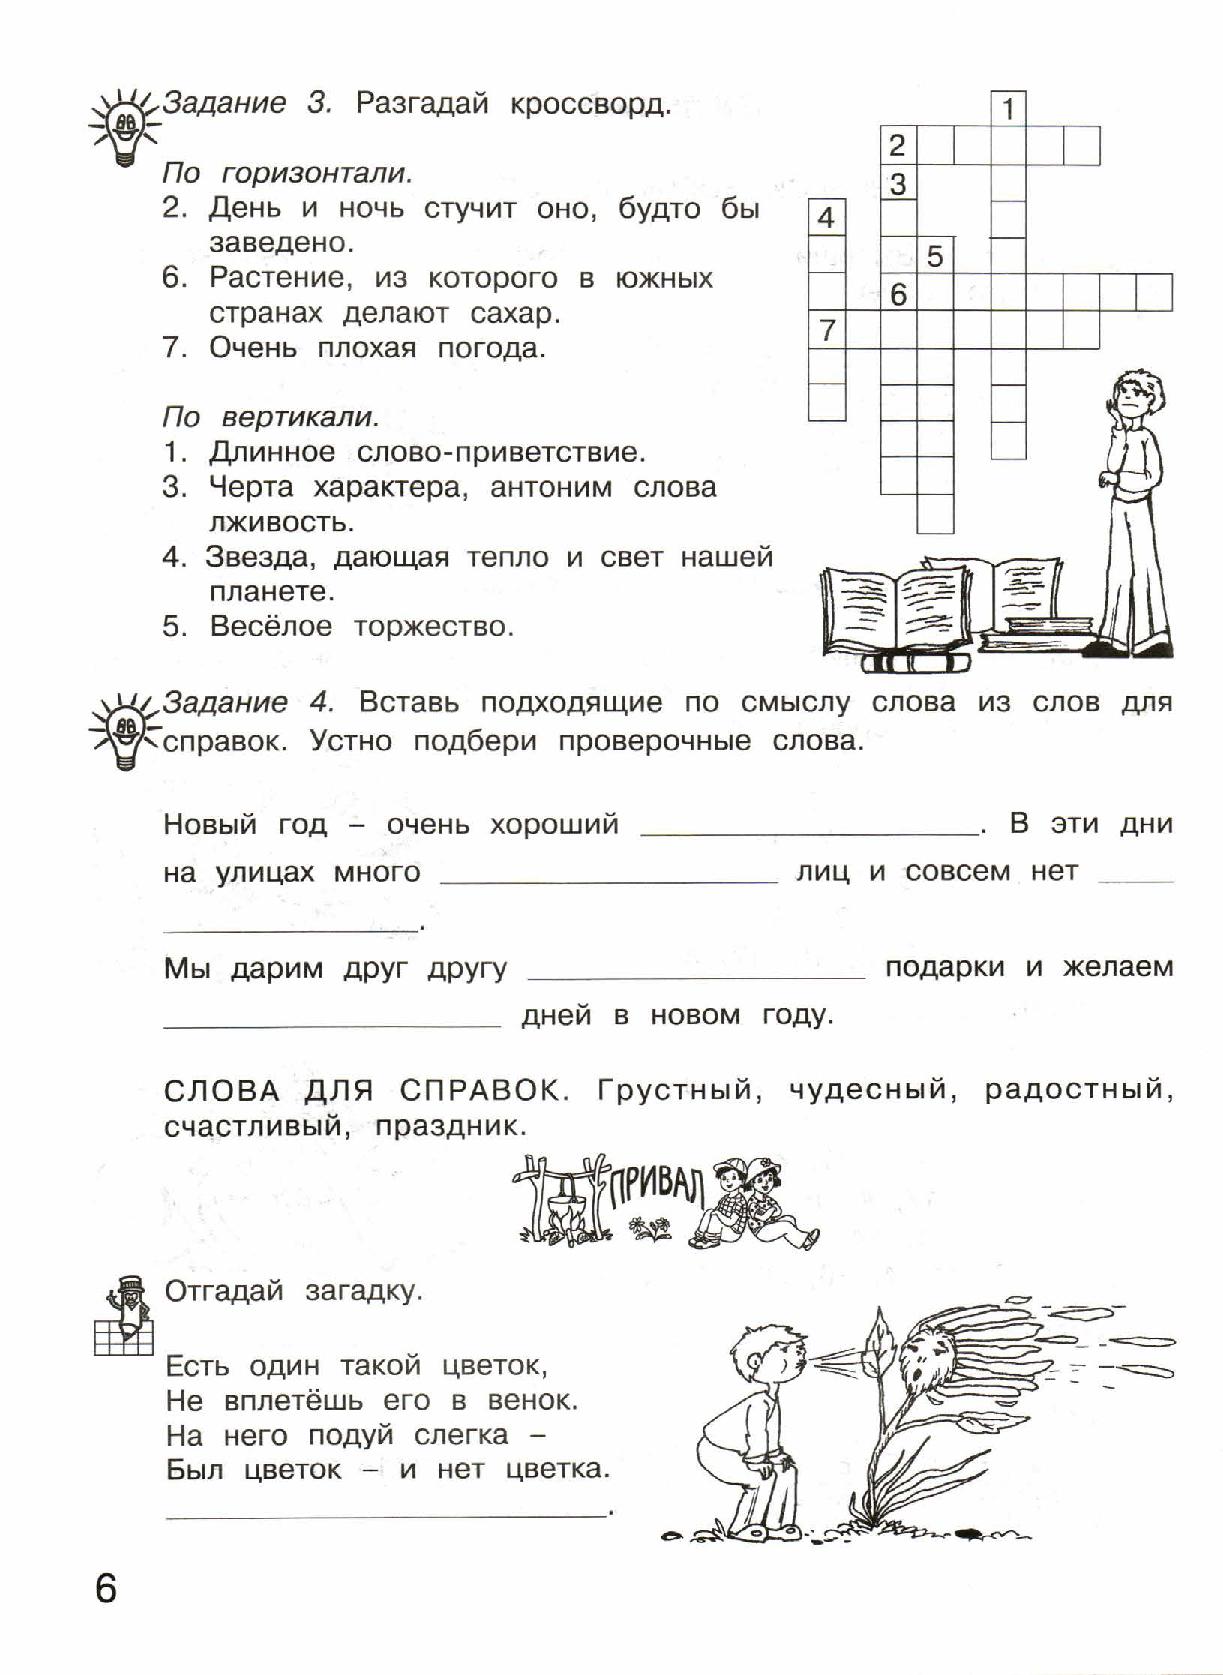 Занимательный русский язык 7 класс